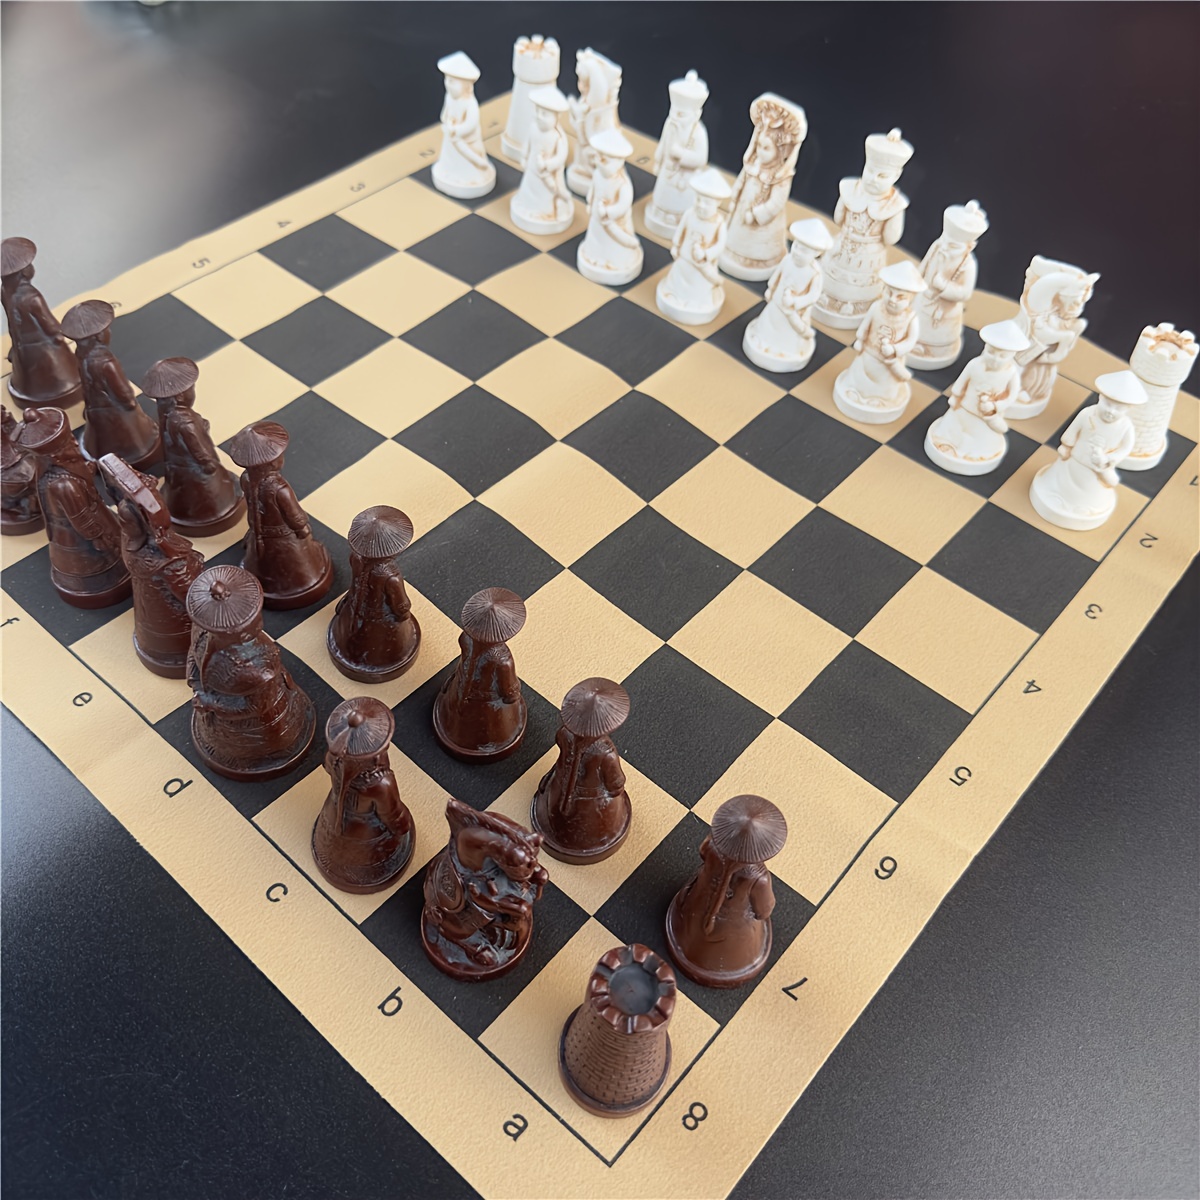 アンティークチェス ラージチェス駒 人工皮革チェス盤 樹脂チェス駒 キャラクターモデリングギフト エンターテイメントゲームボックス 40*19cm  (15.7*7.5インチ)